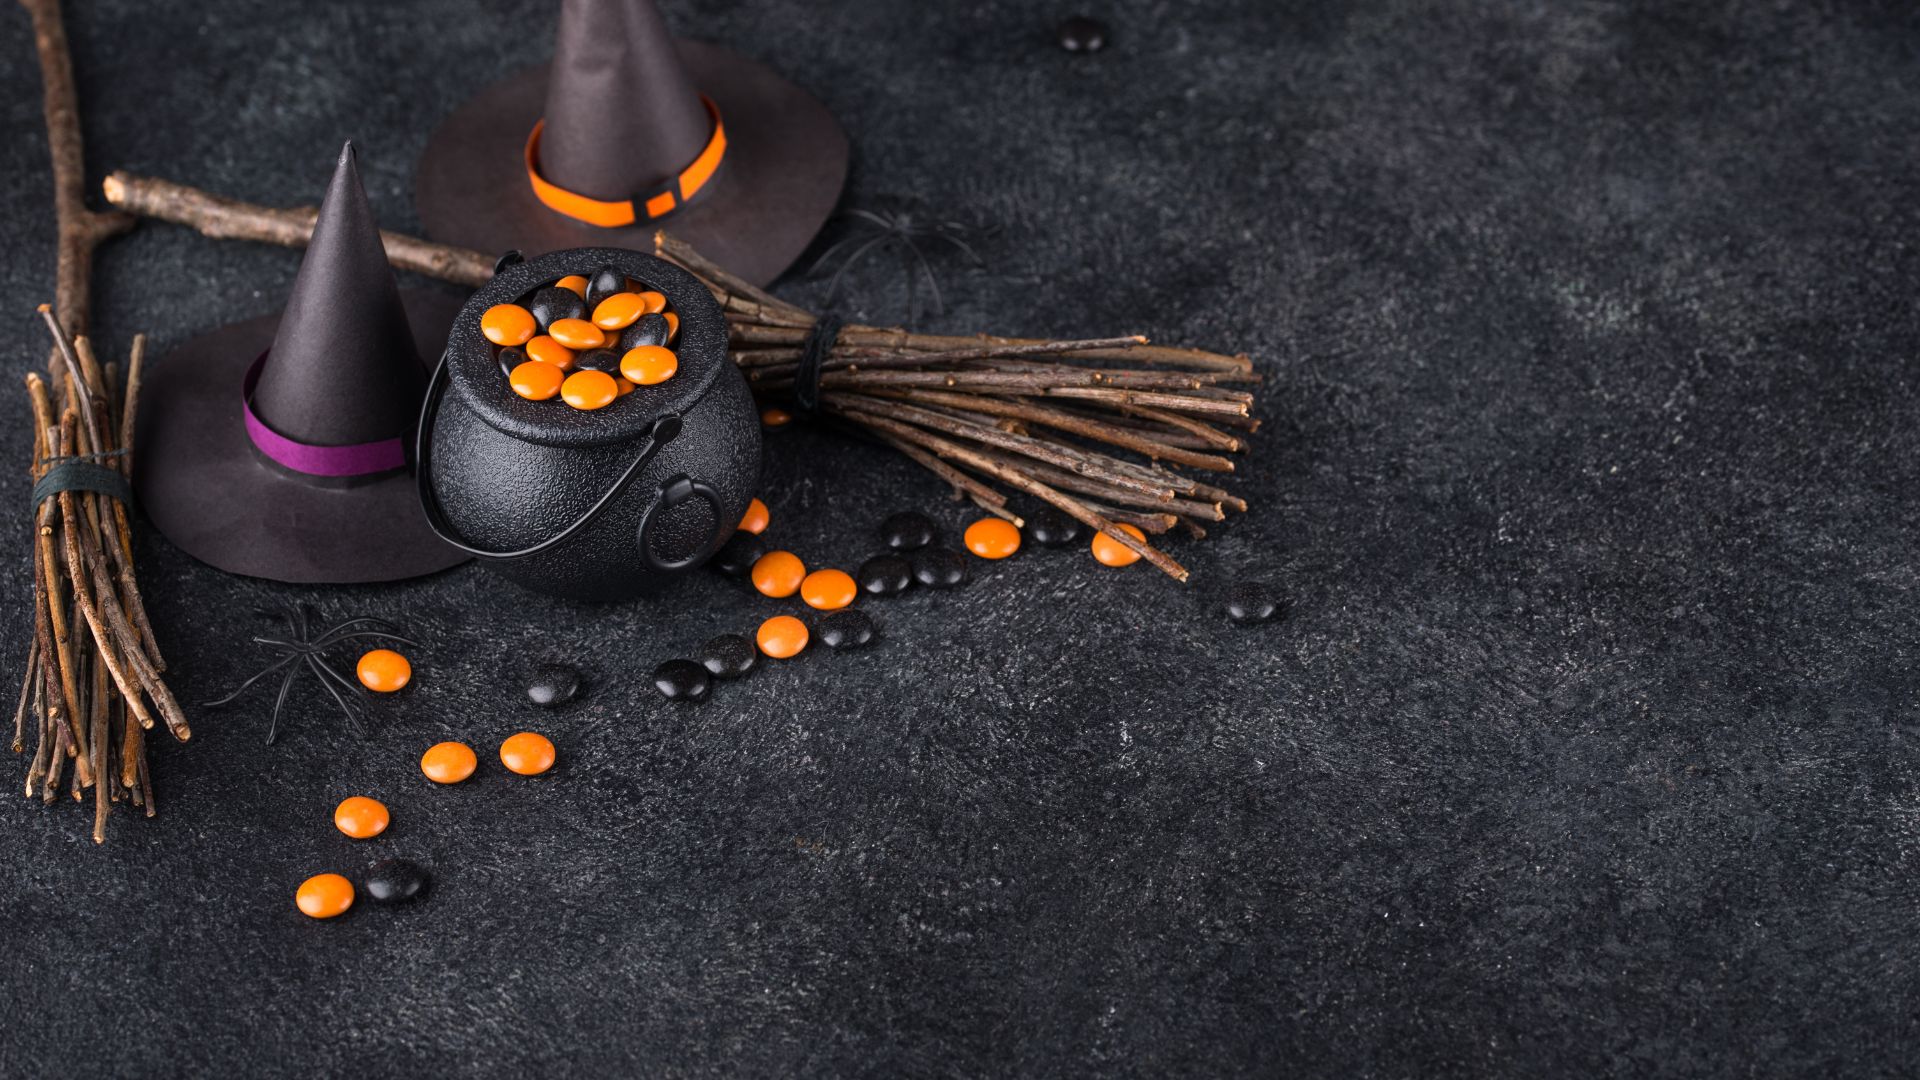 Imagem de fundo preto. Em destaque, acessórios utilizados pelas bruxas como chapéus, caldeirão, gravetos, aranha e pedras nas cores laranja e preto.